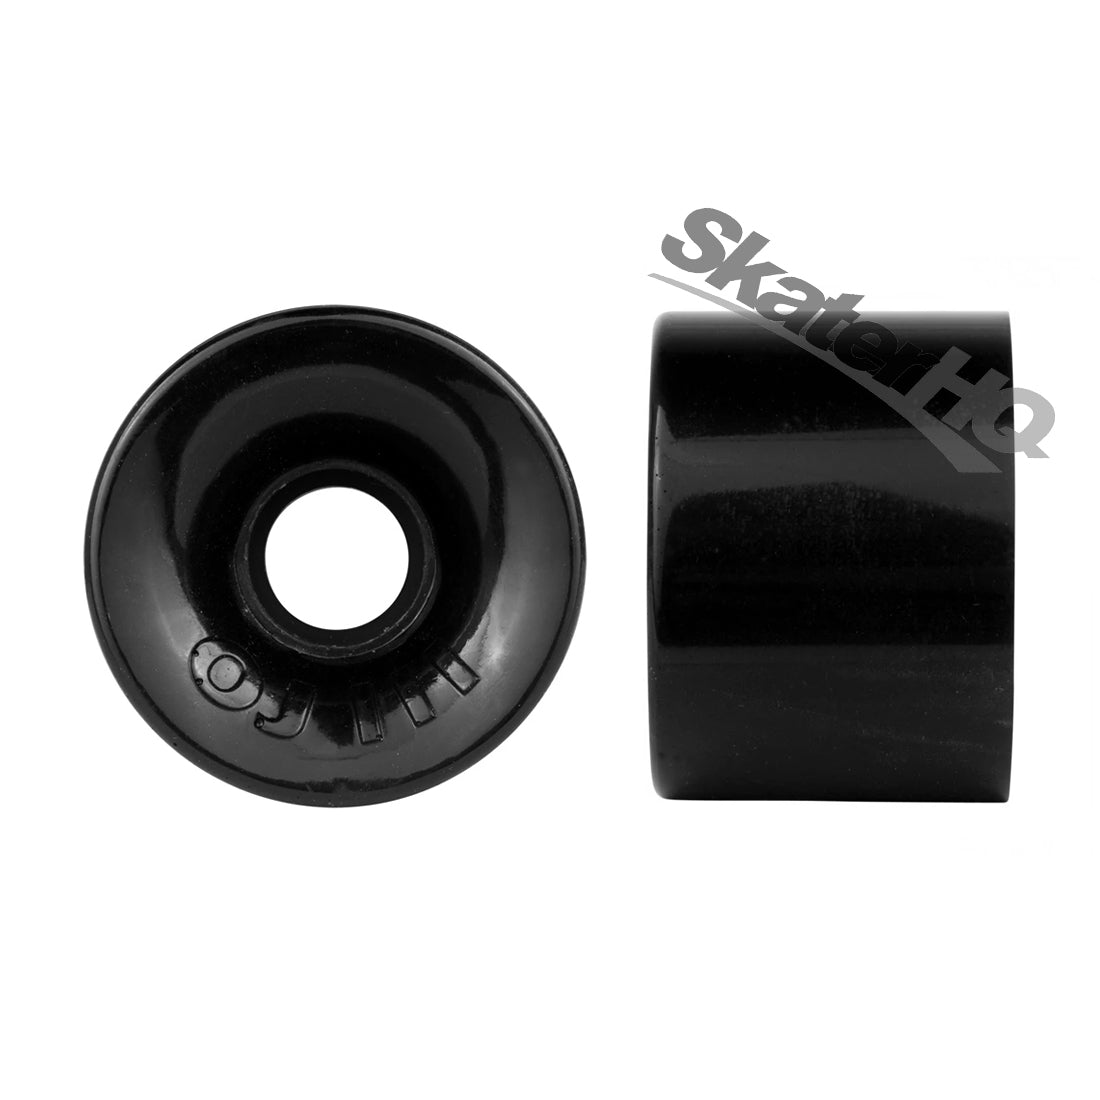 OJs Hot Juice 60mm 78a 4pk - Black Skateboard Wheels